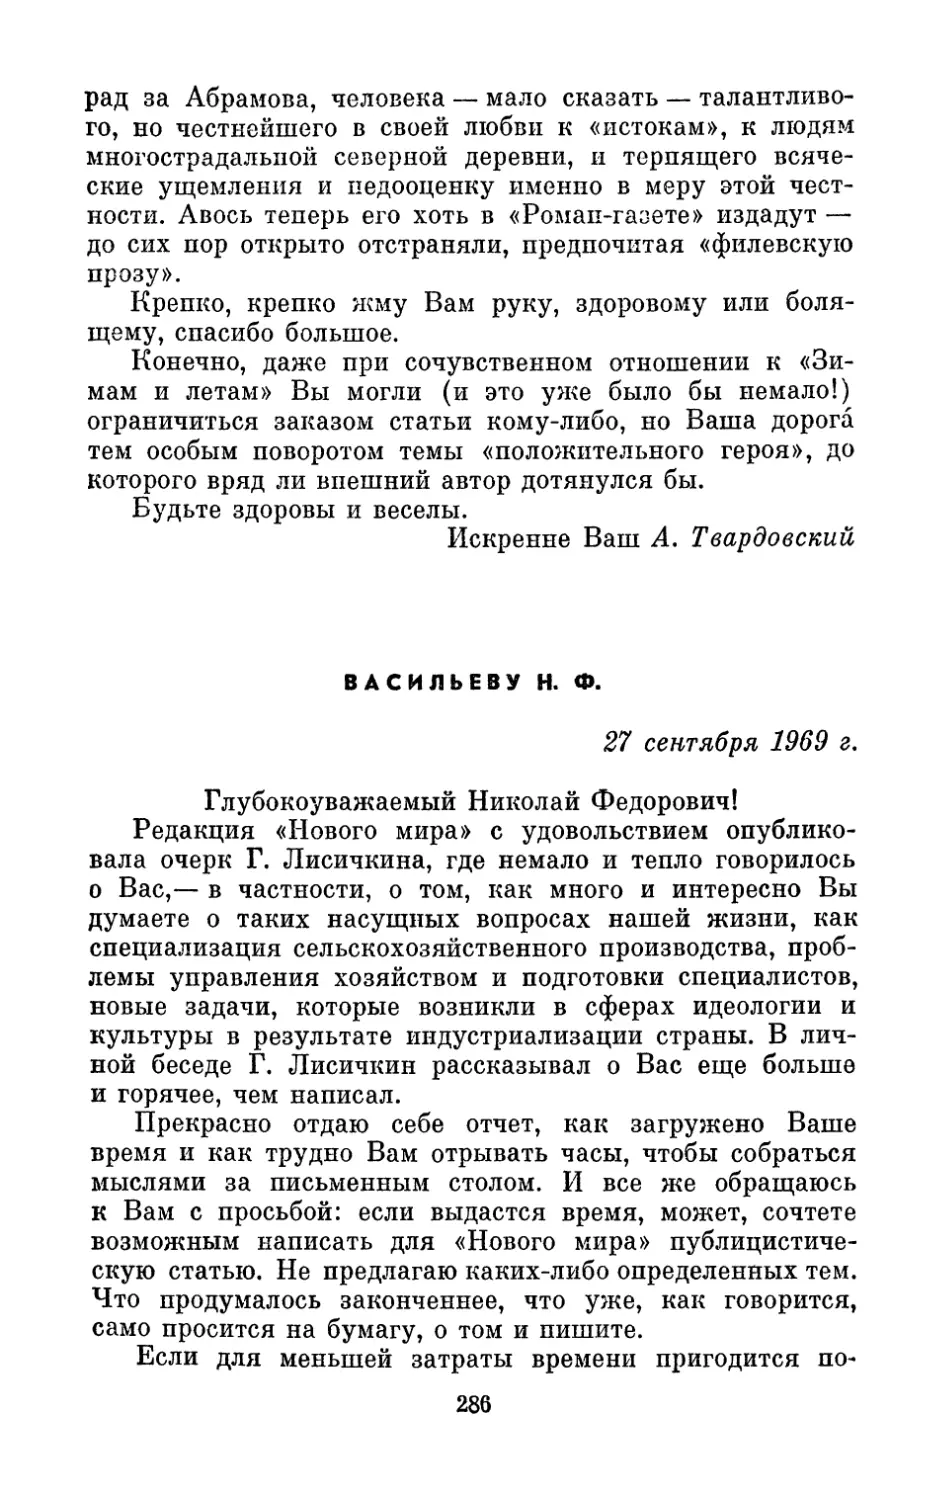 Васильеву Н. Ф., 27 сентября 1969 г.